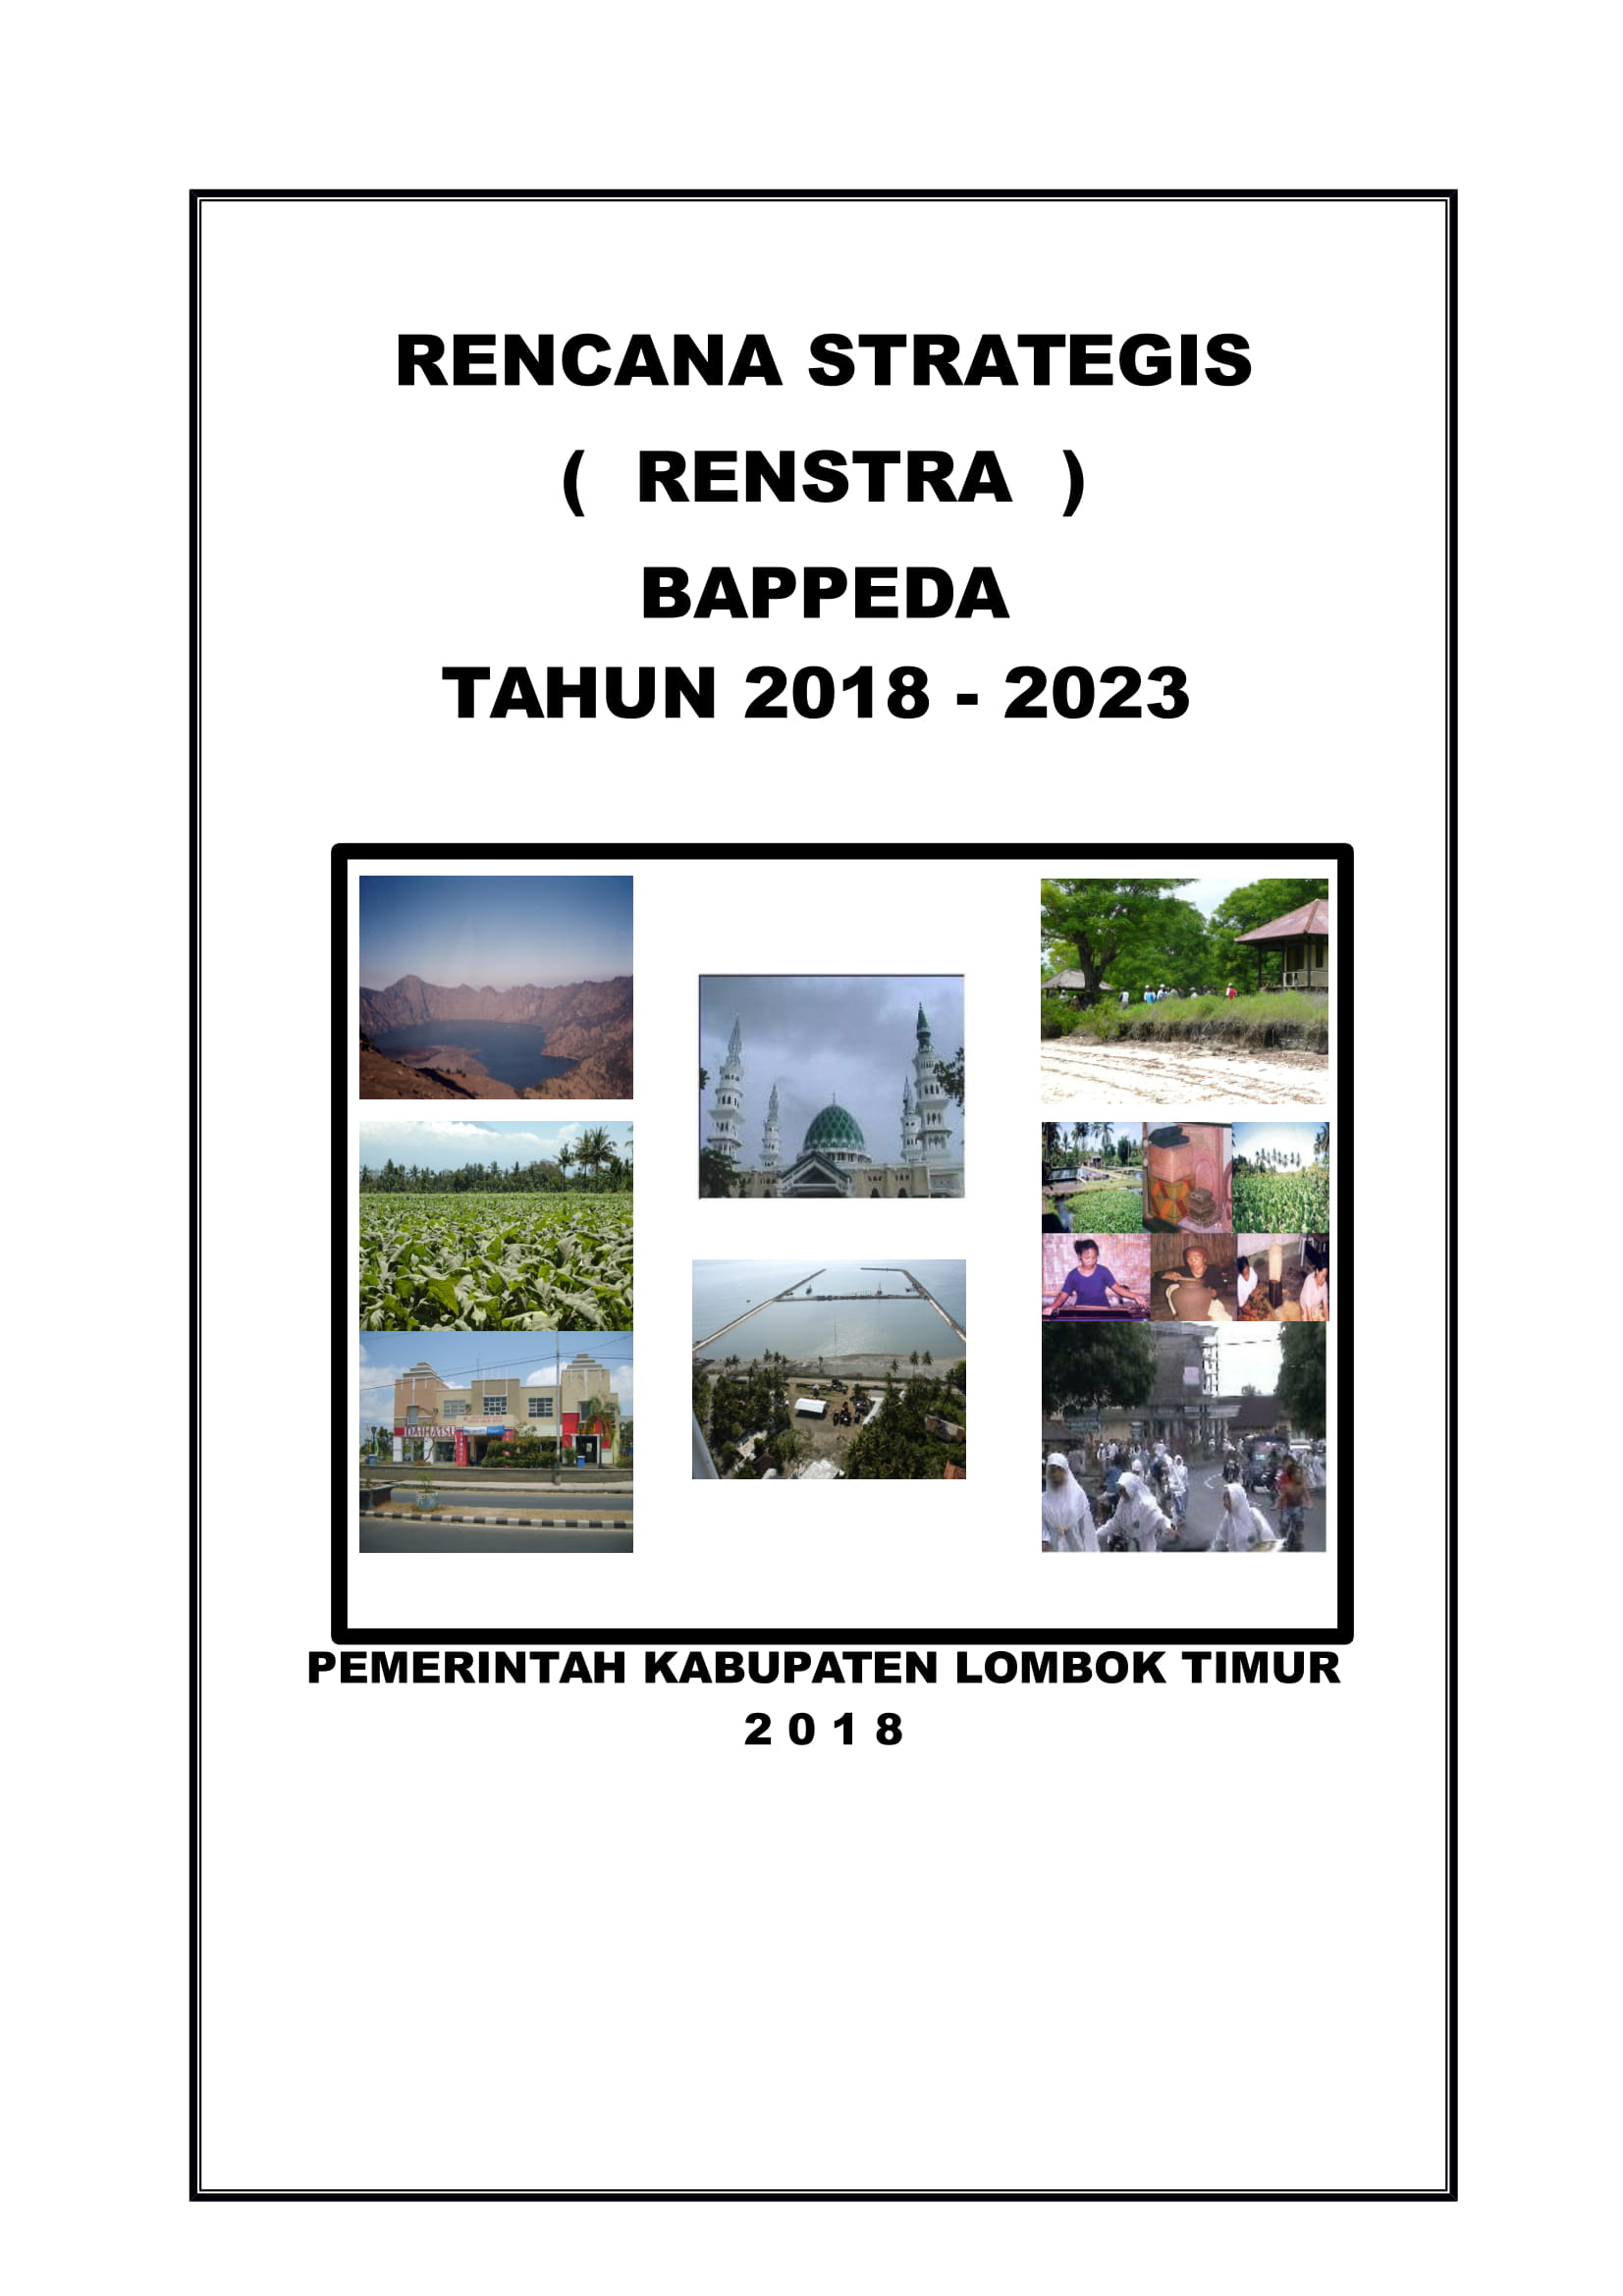 RENCANA STRATEGIS BAPPEDA LOMBOK TIMUR TAHUN 2018 - 2023